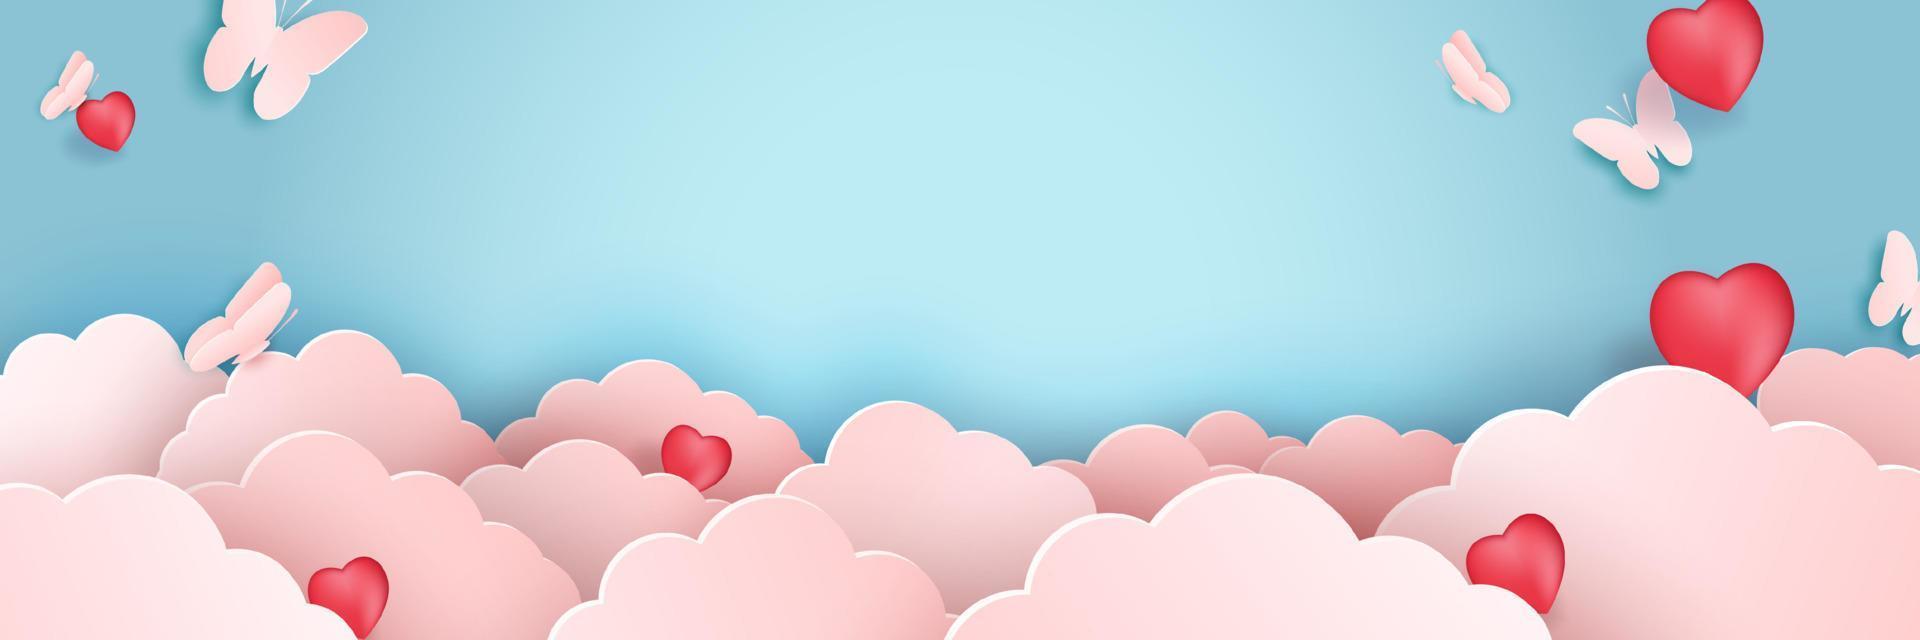 nuage d'art papier illustration avec des papillons sur le concept de la saint-valentin rose. papillon volant dans le ciel. papier de conception créative découpé et style artisanal origami nuageux et ciel pour vecteur de couleur pastel paysage